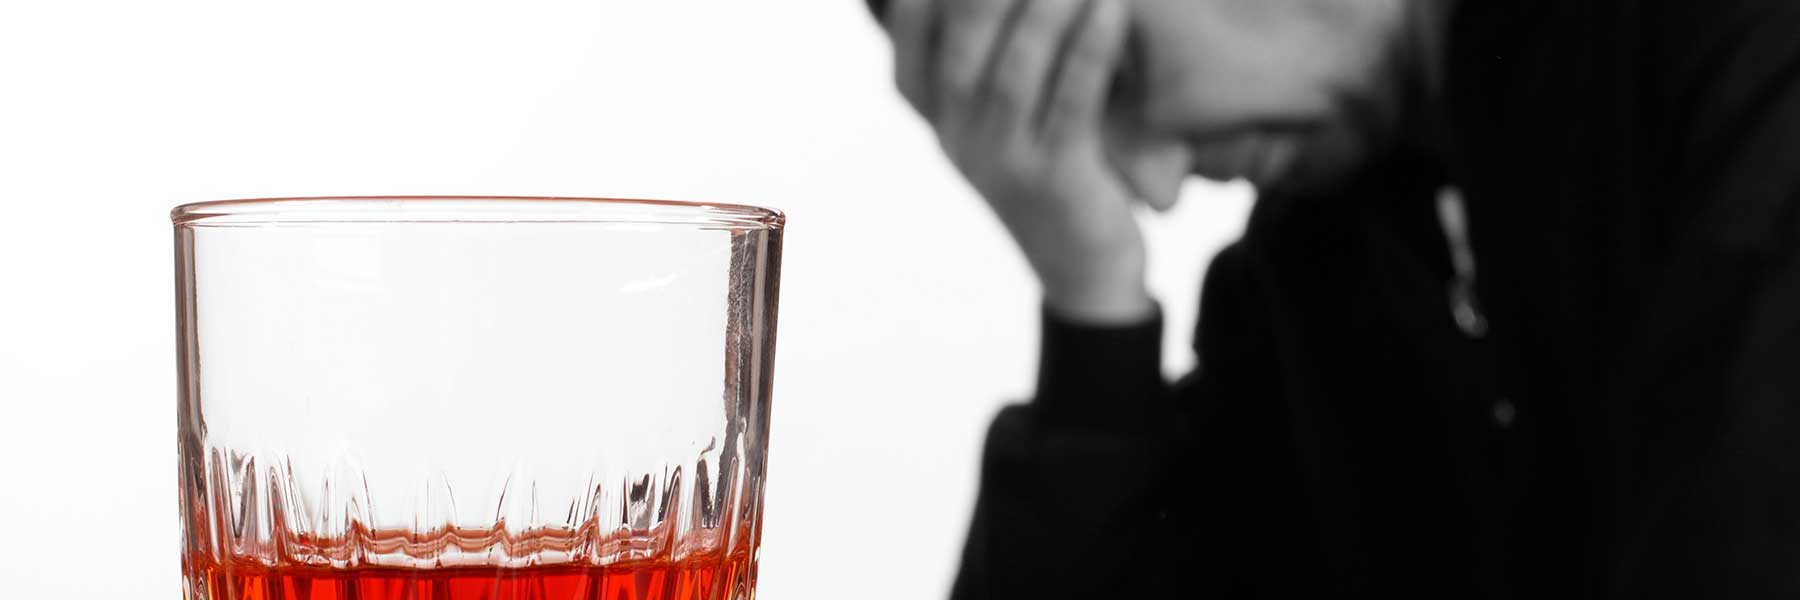 стакан с алкоголем крупным планом на фоне грустного мужчины